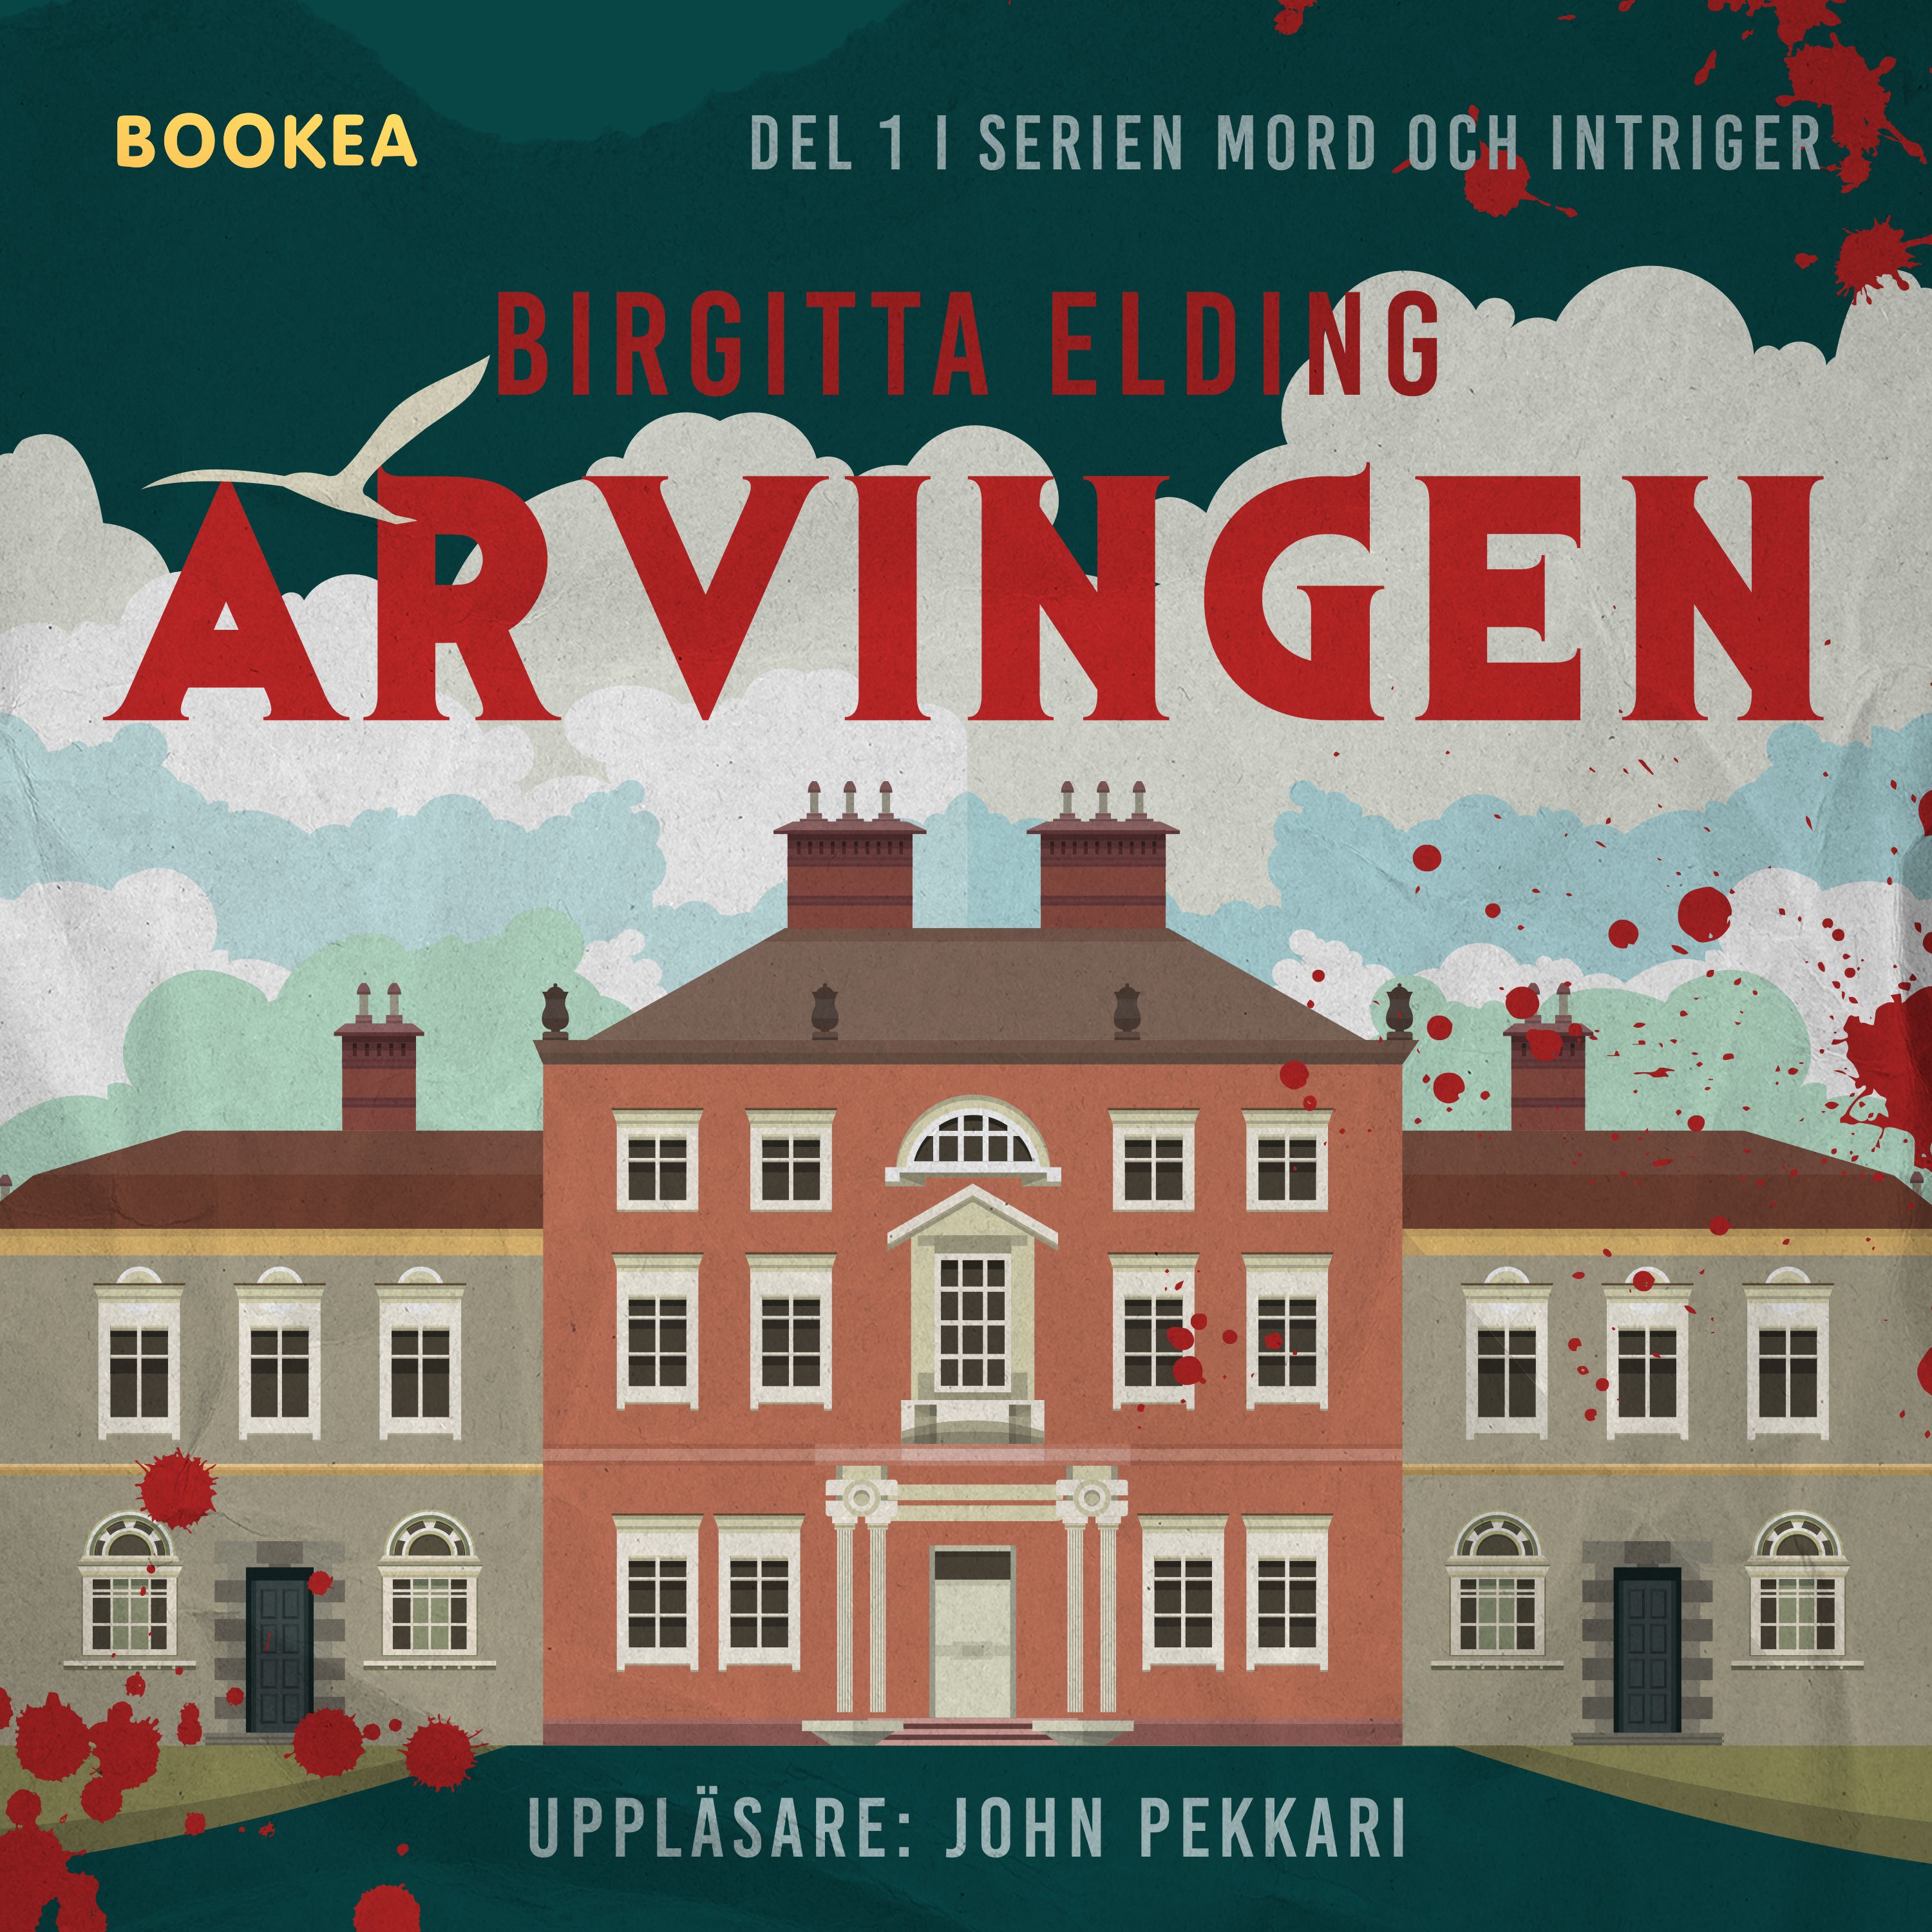 Arvingen, eBook by Birgitta Elding